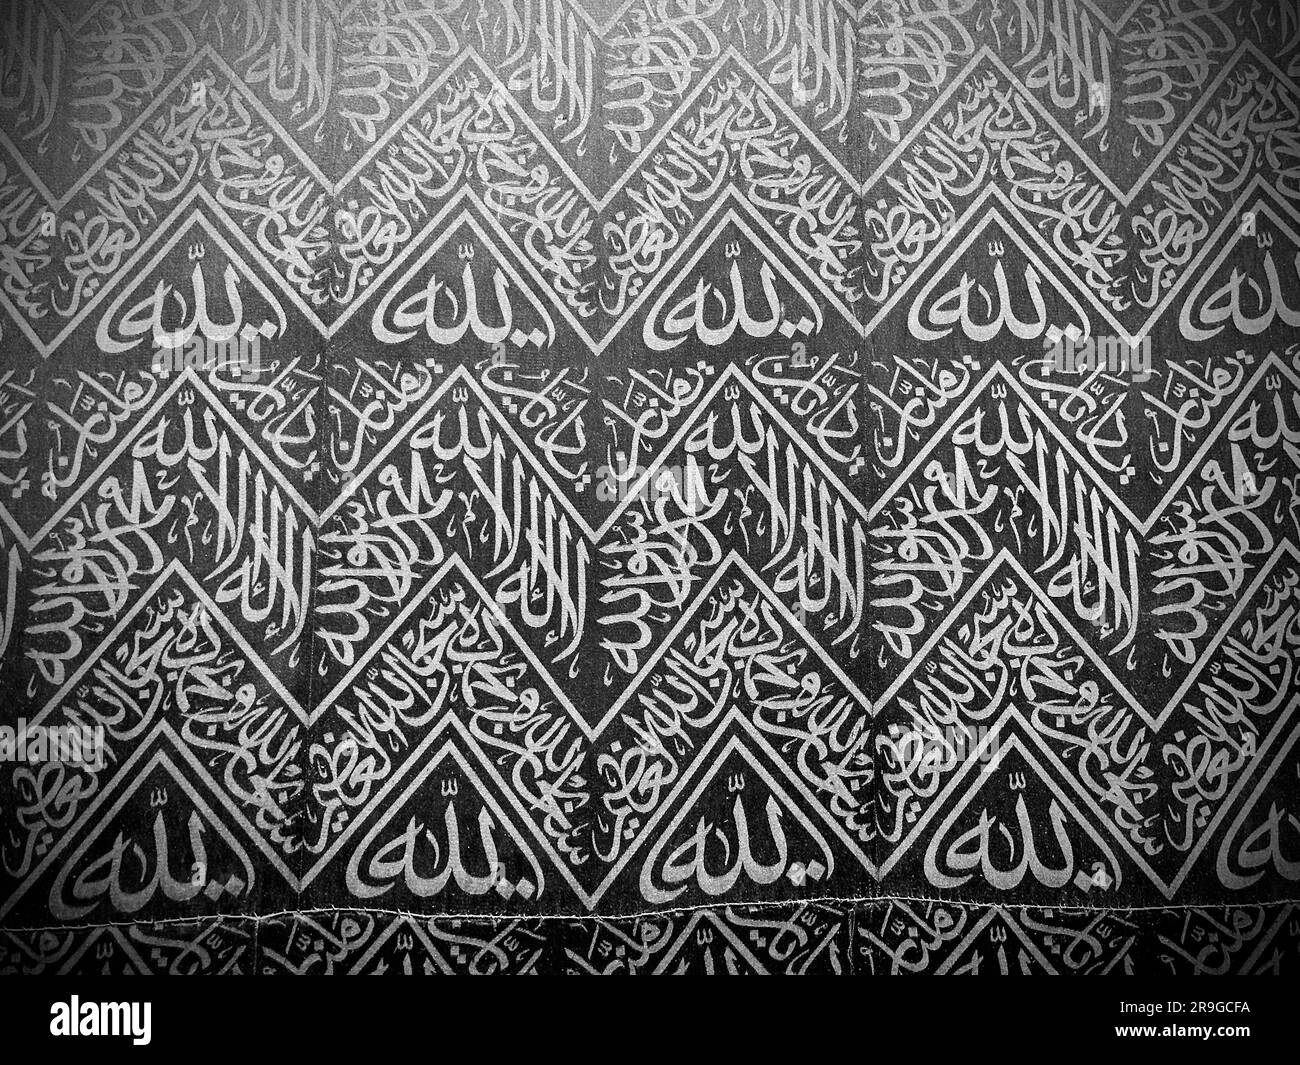 Inscriptions de calligraphie arabe et ornement d'art islamique au rideau Al Kaaba dans la mosquée Al Haram - la Mecque Arabie Saoudite - hajj et umra Banque D'Images